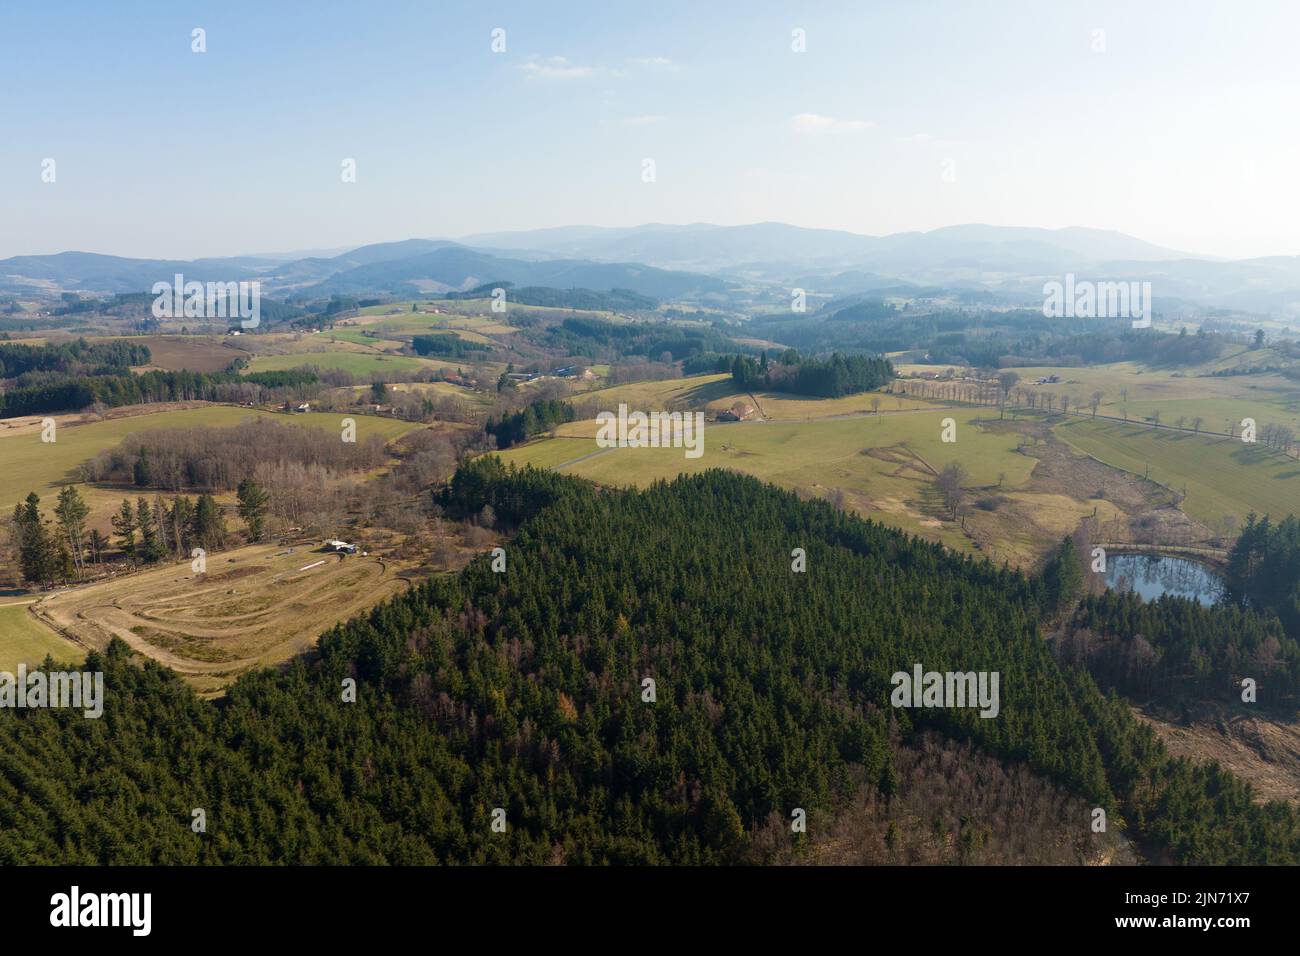 Vue aérienne de la forêt de pins avec une grande superficie d'arbres coupés à la suite de l'industrie mondiale de déboisement. Influence humaine néfaste sur l'écologie mondiale Banque D'Images